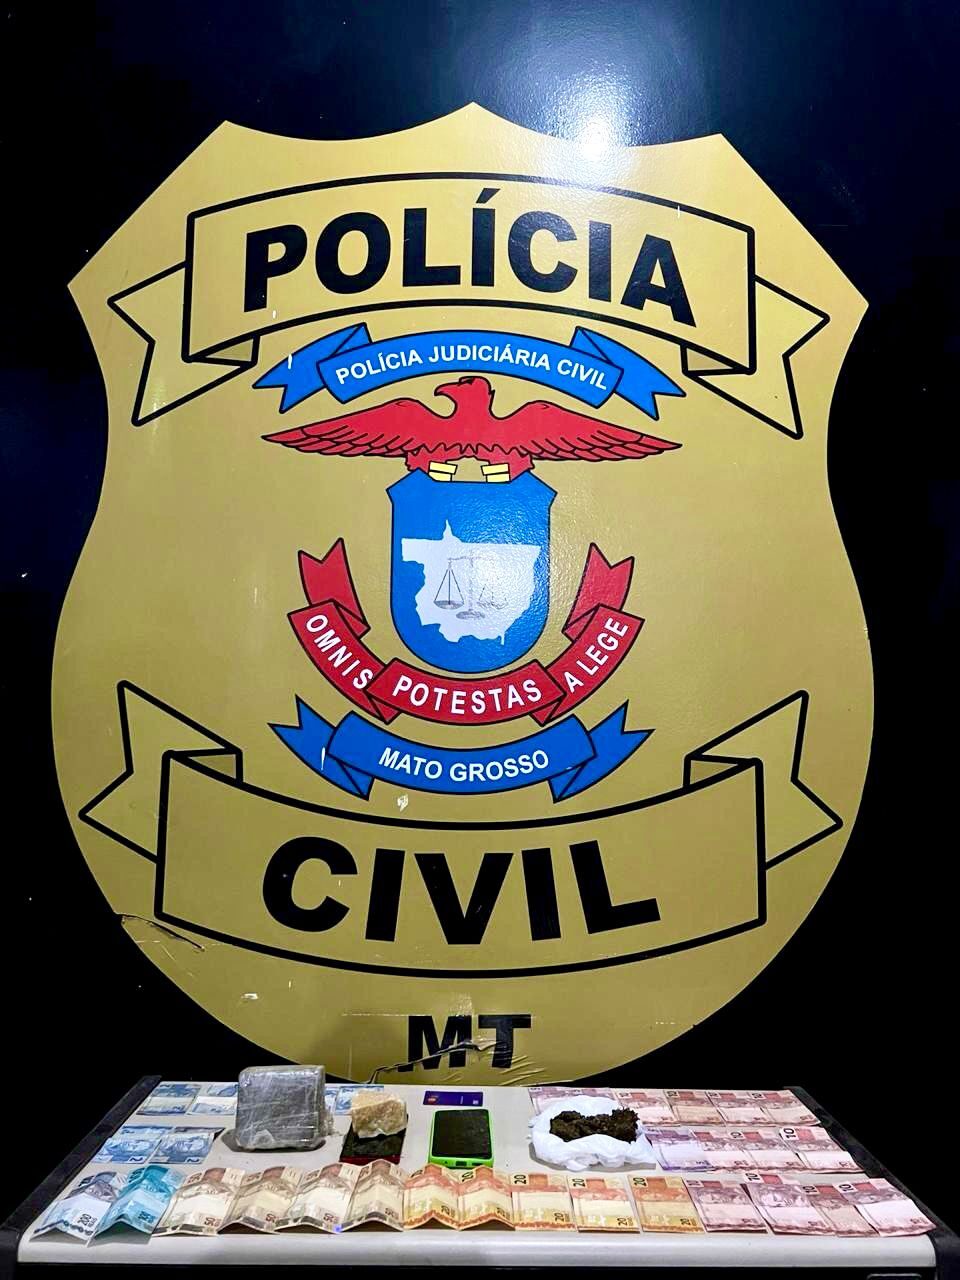 Traficante monitorado por tornozeleira eletrônica é preso pela Polícia Civil em Água Boa